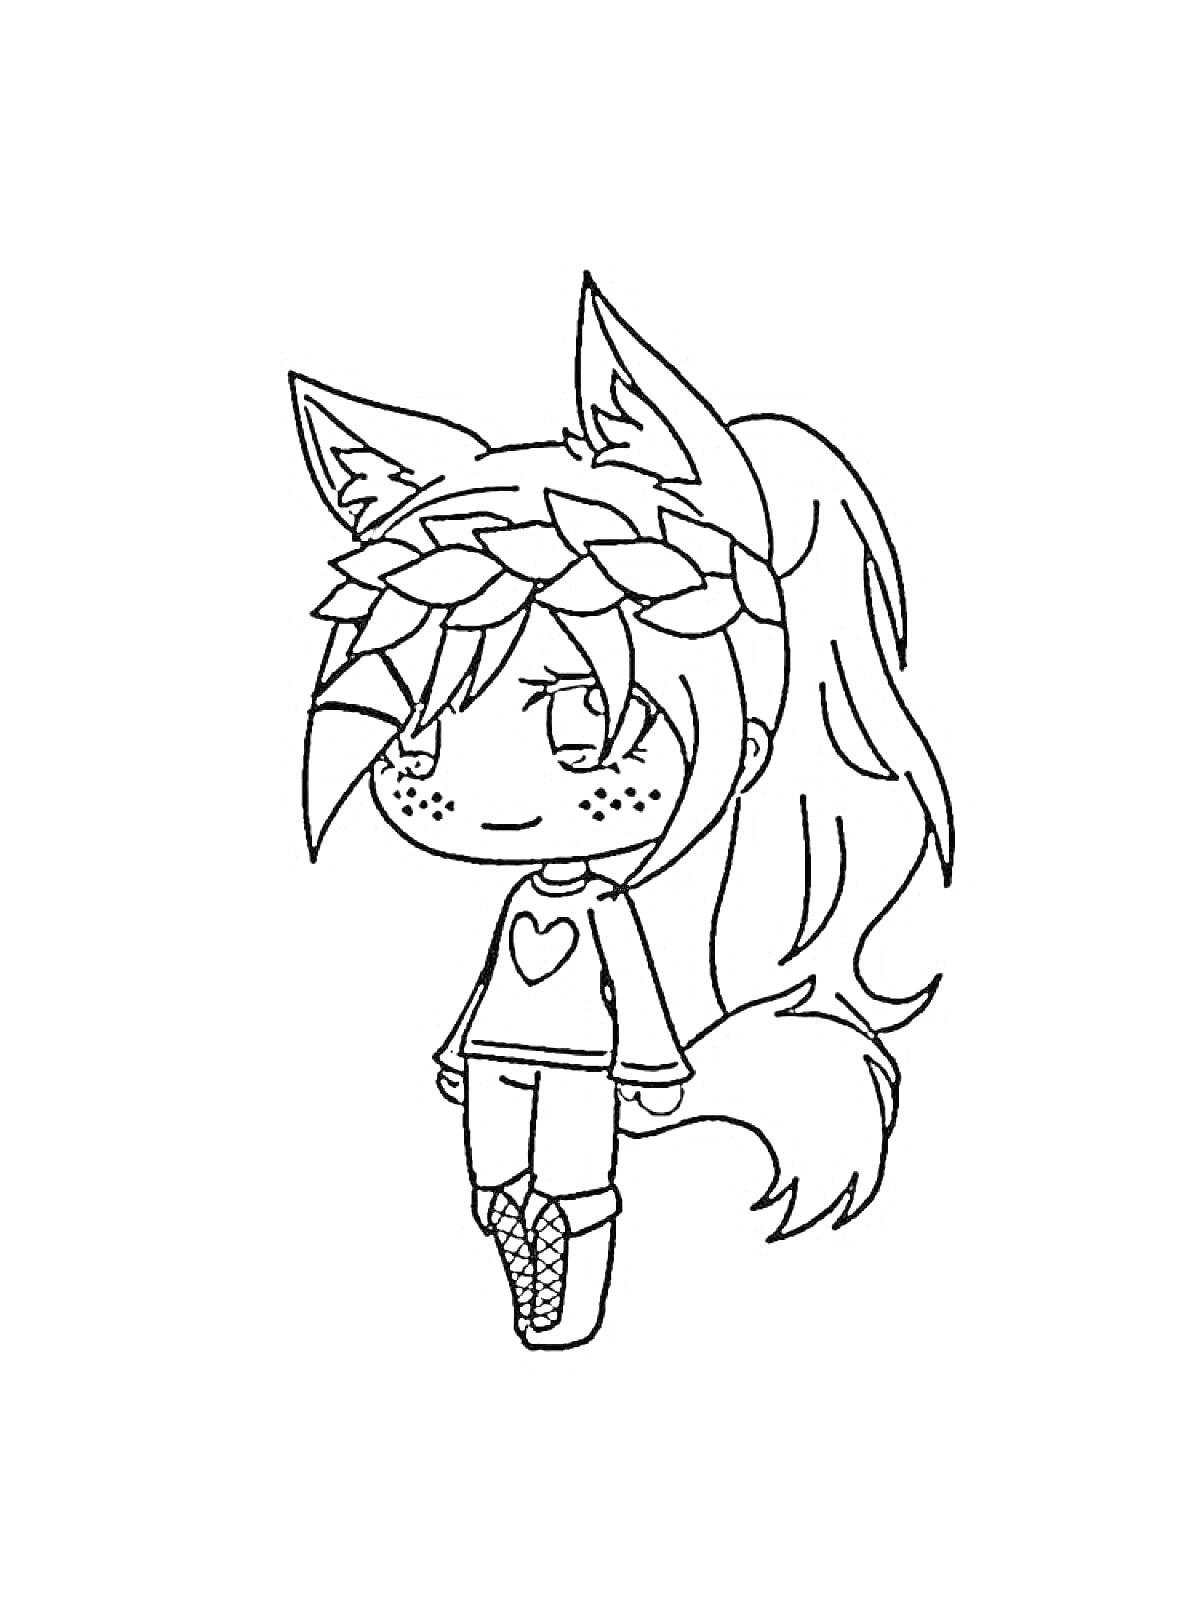 Раскраска Девочка с кошачьими ушками и хвостом в свитере с сердечком и косах на голове